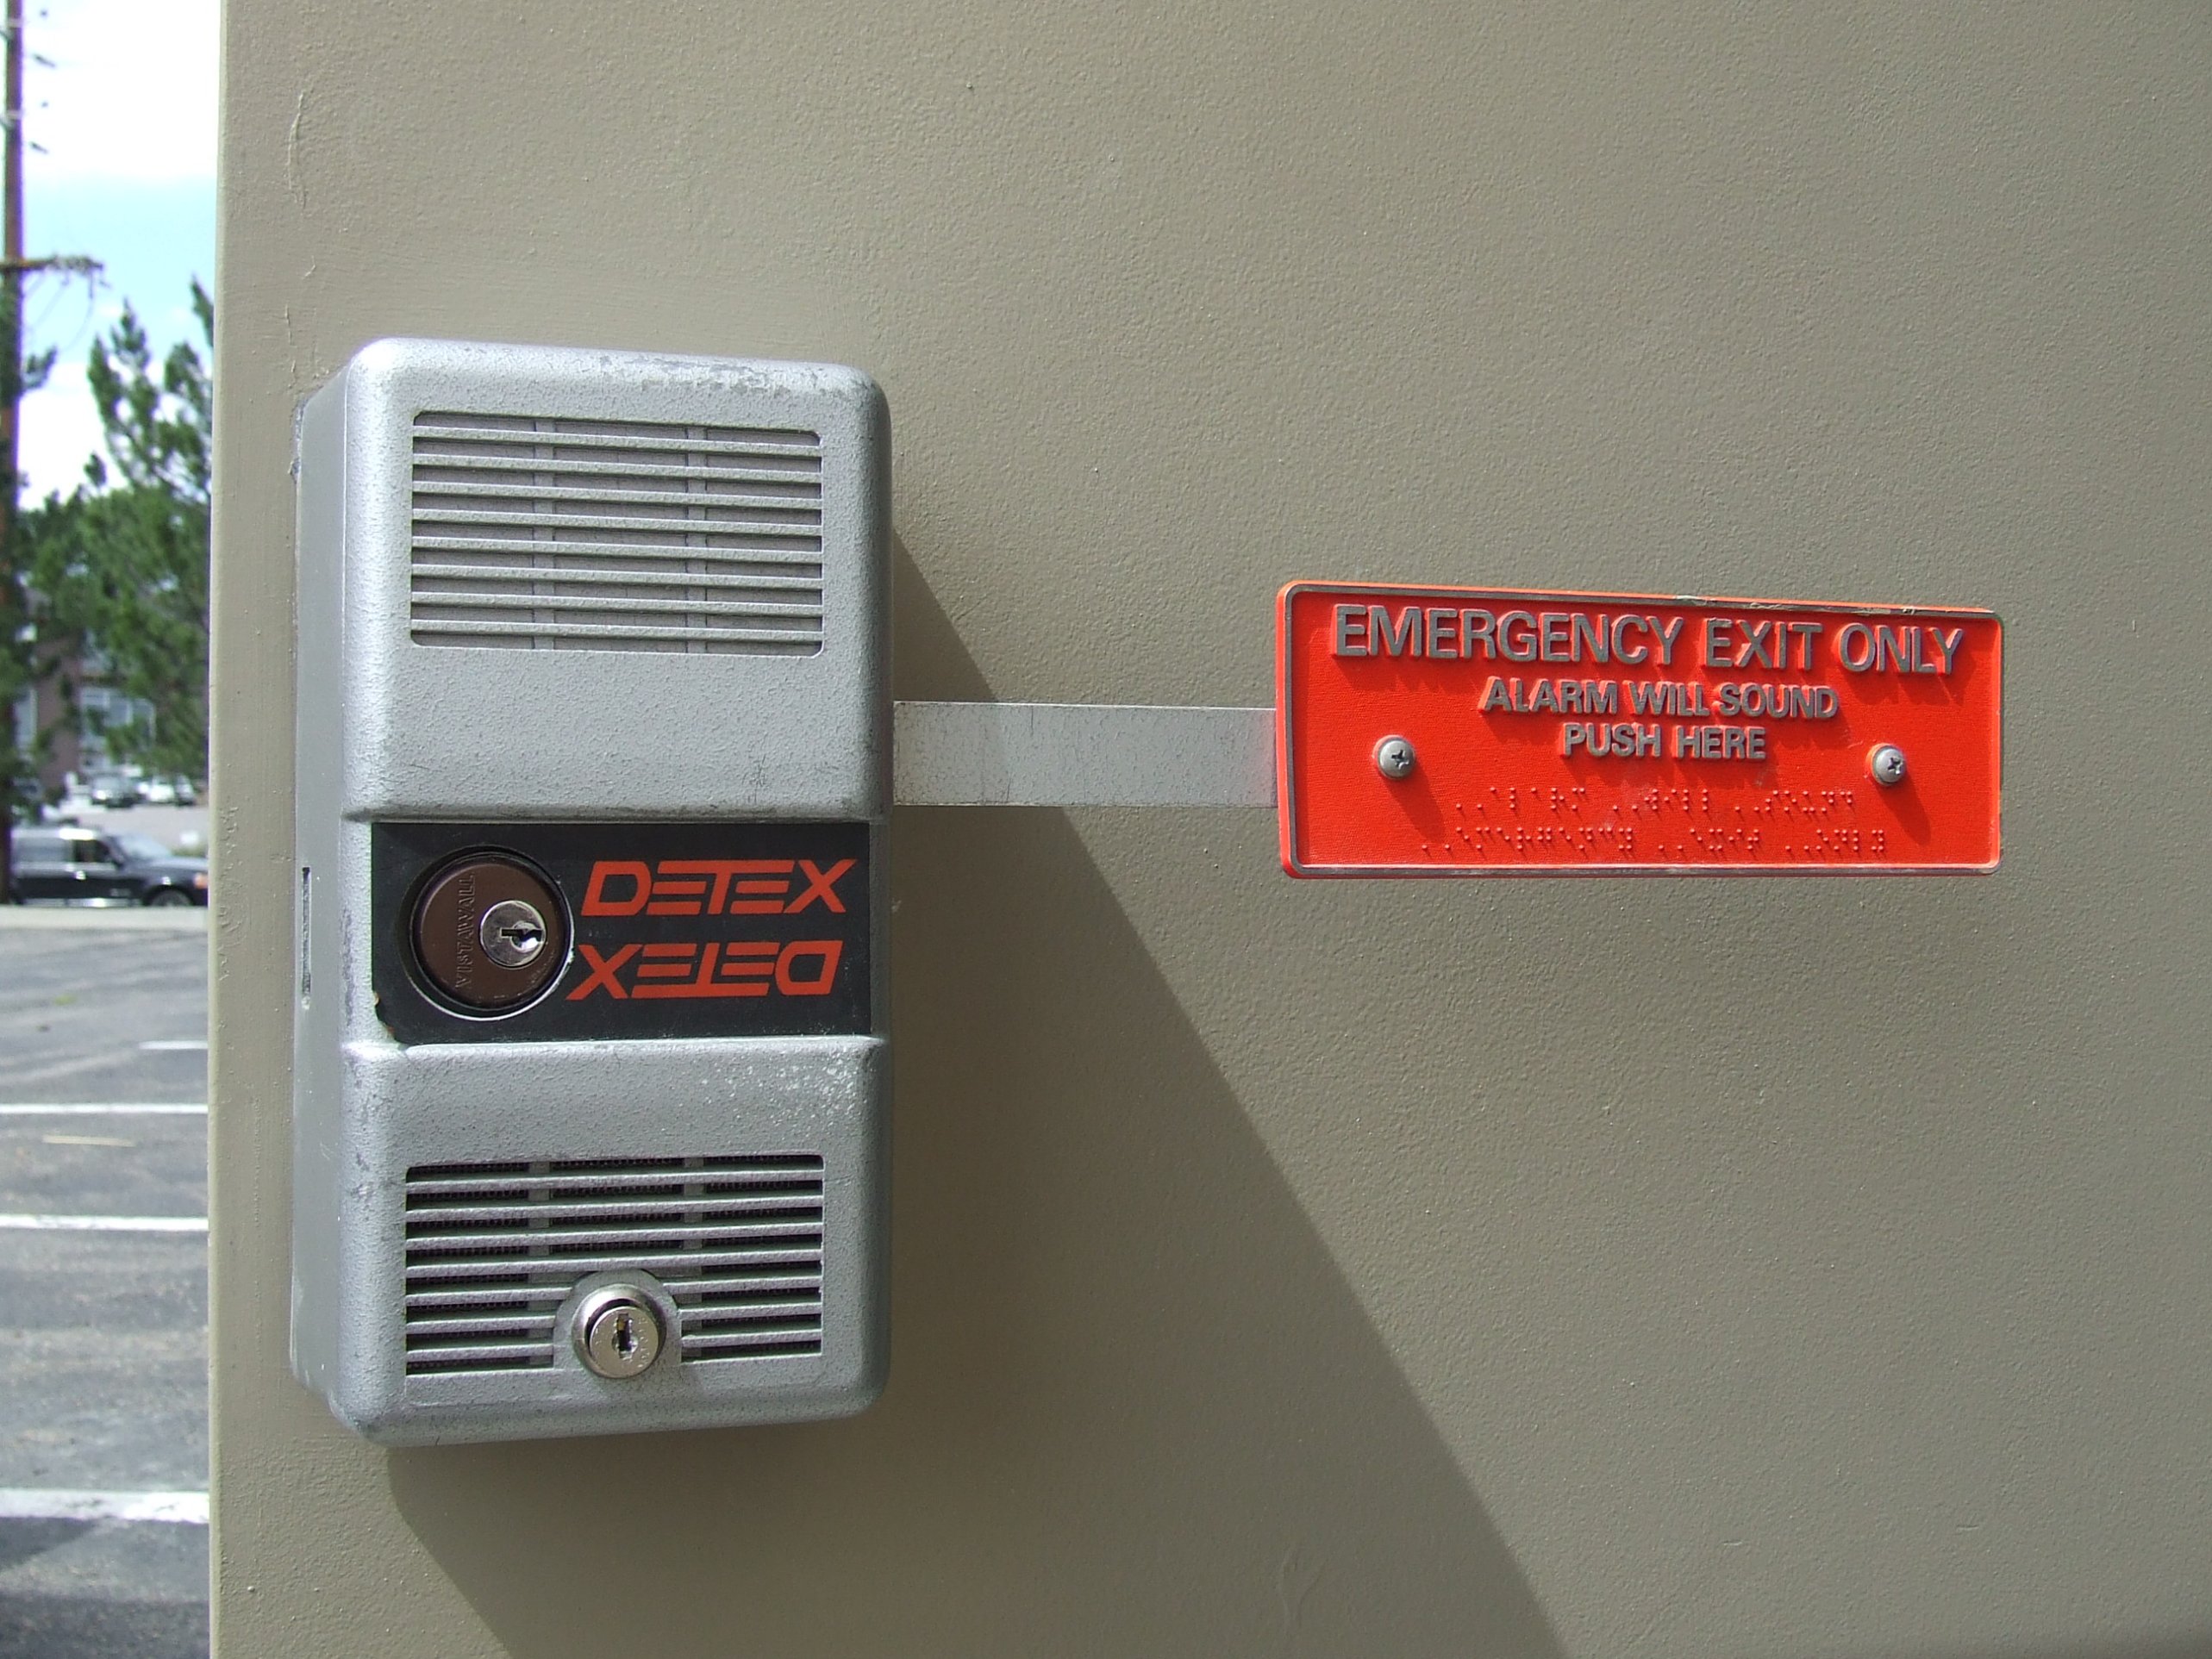 Detex alarm lock repair & replacement Sunrise